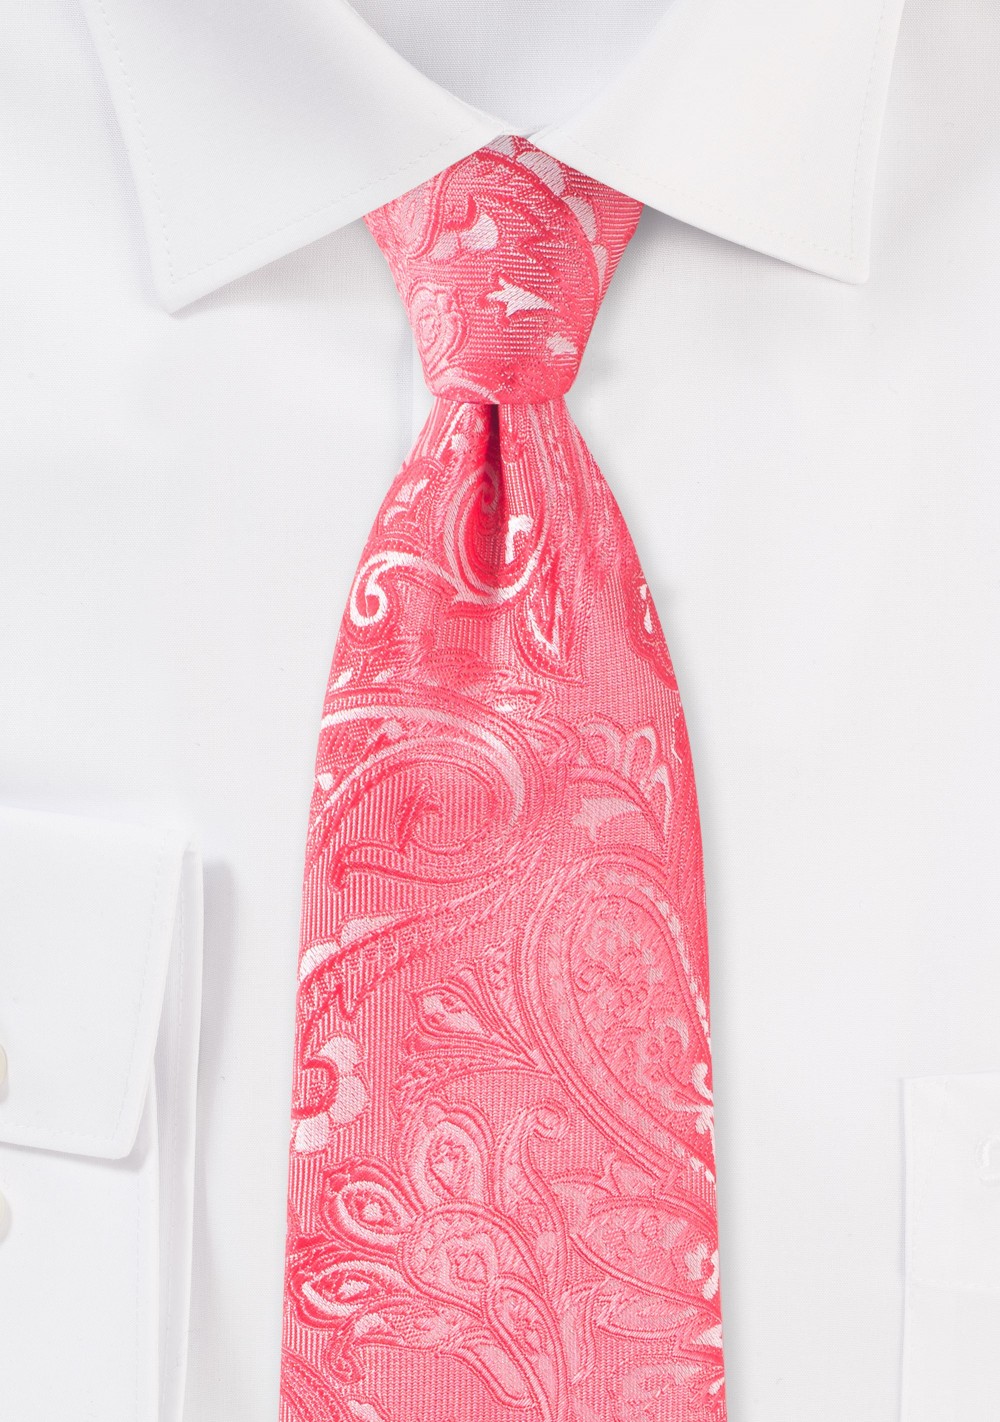 Bright Coral Paisley XL Necktie